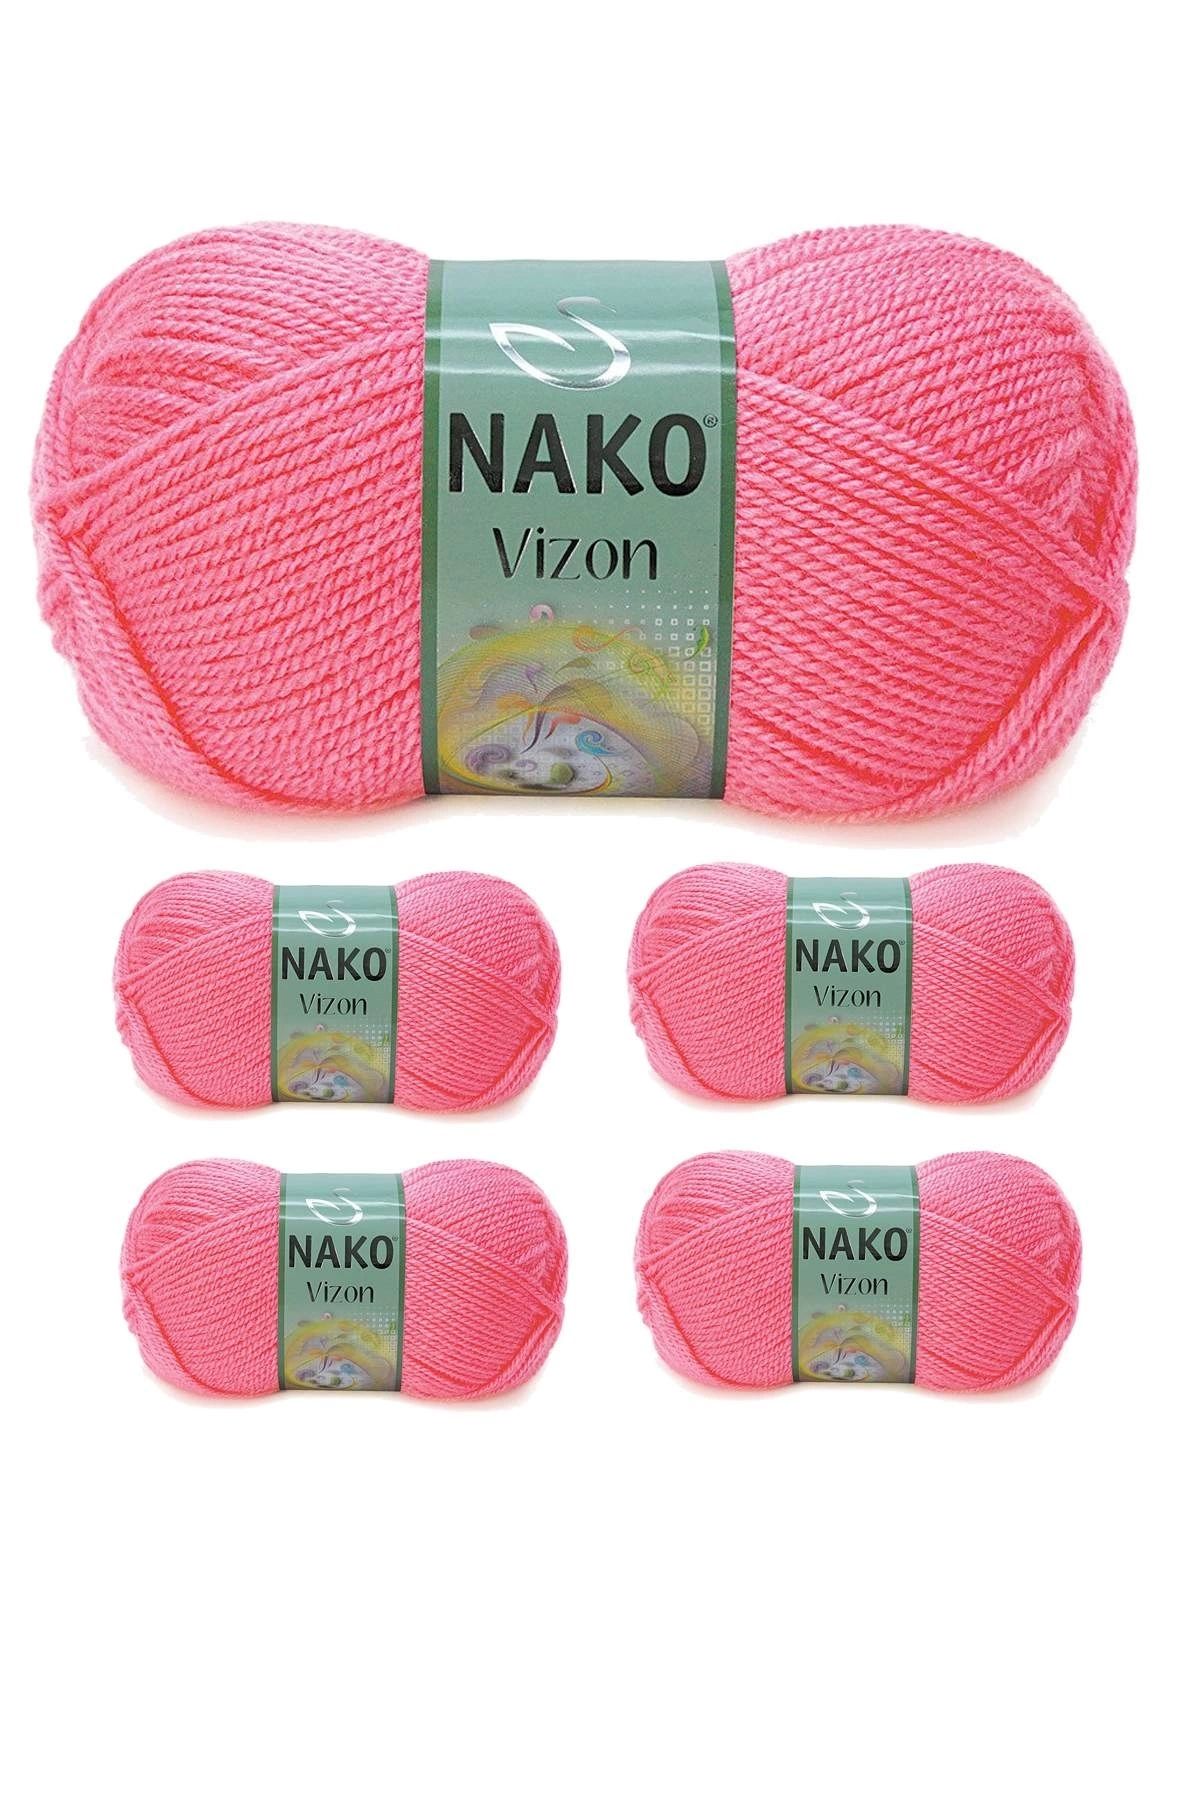 Nako 5 Adet Vizon Premium Akrilik El Örgü İpi Yünü Renk No:236 Gül Pembe